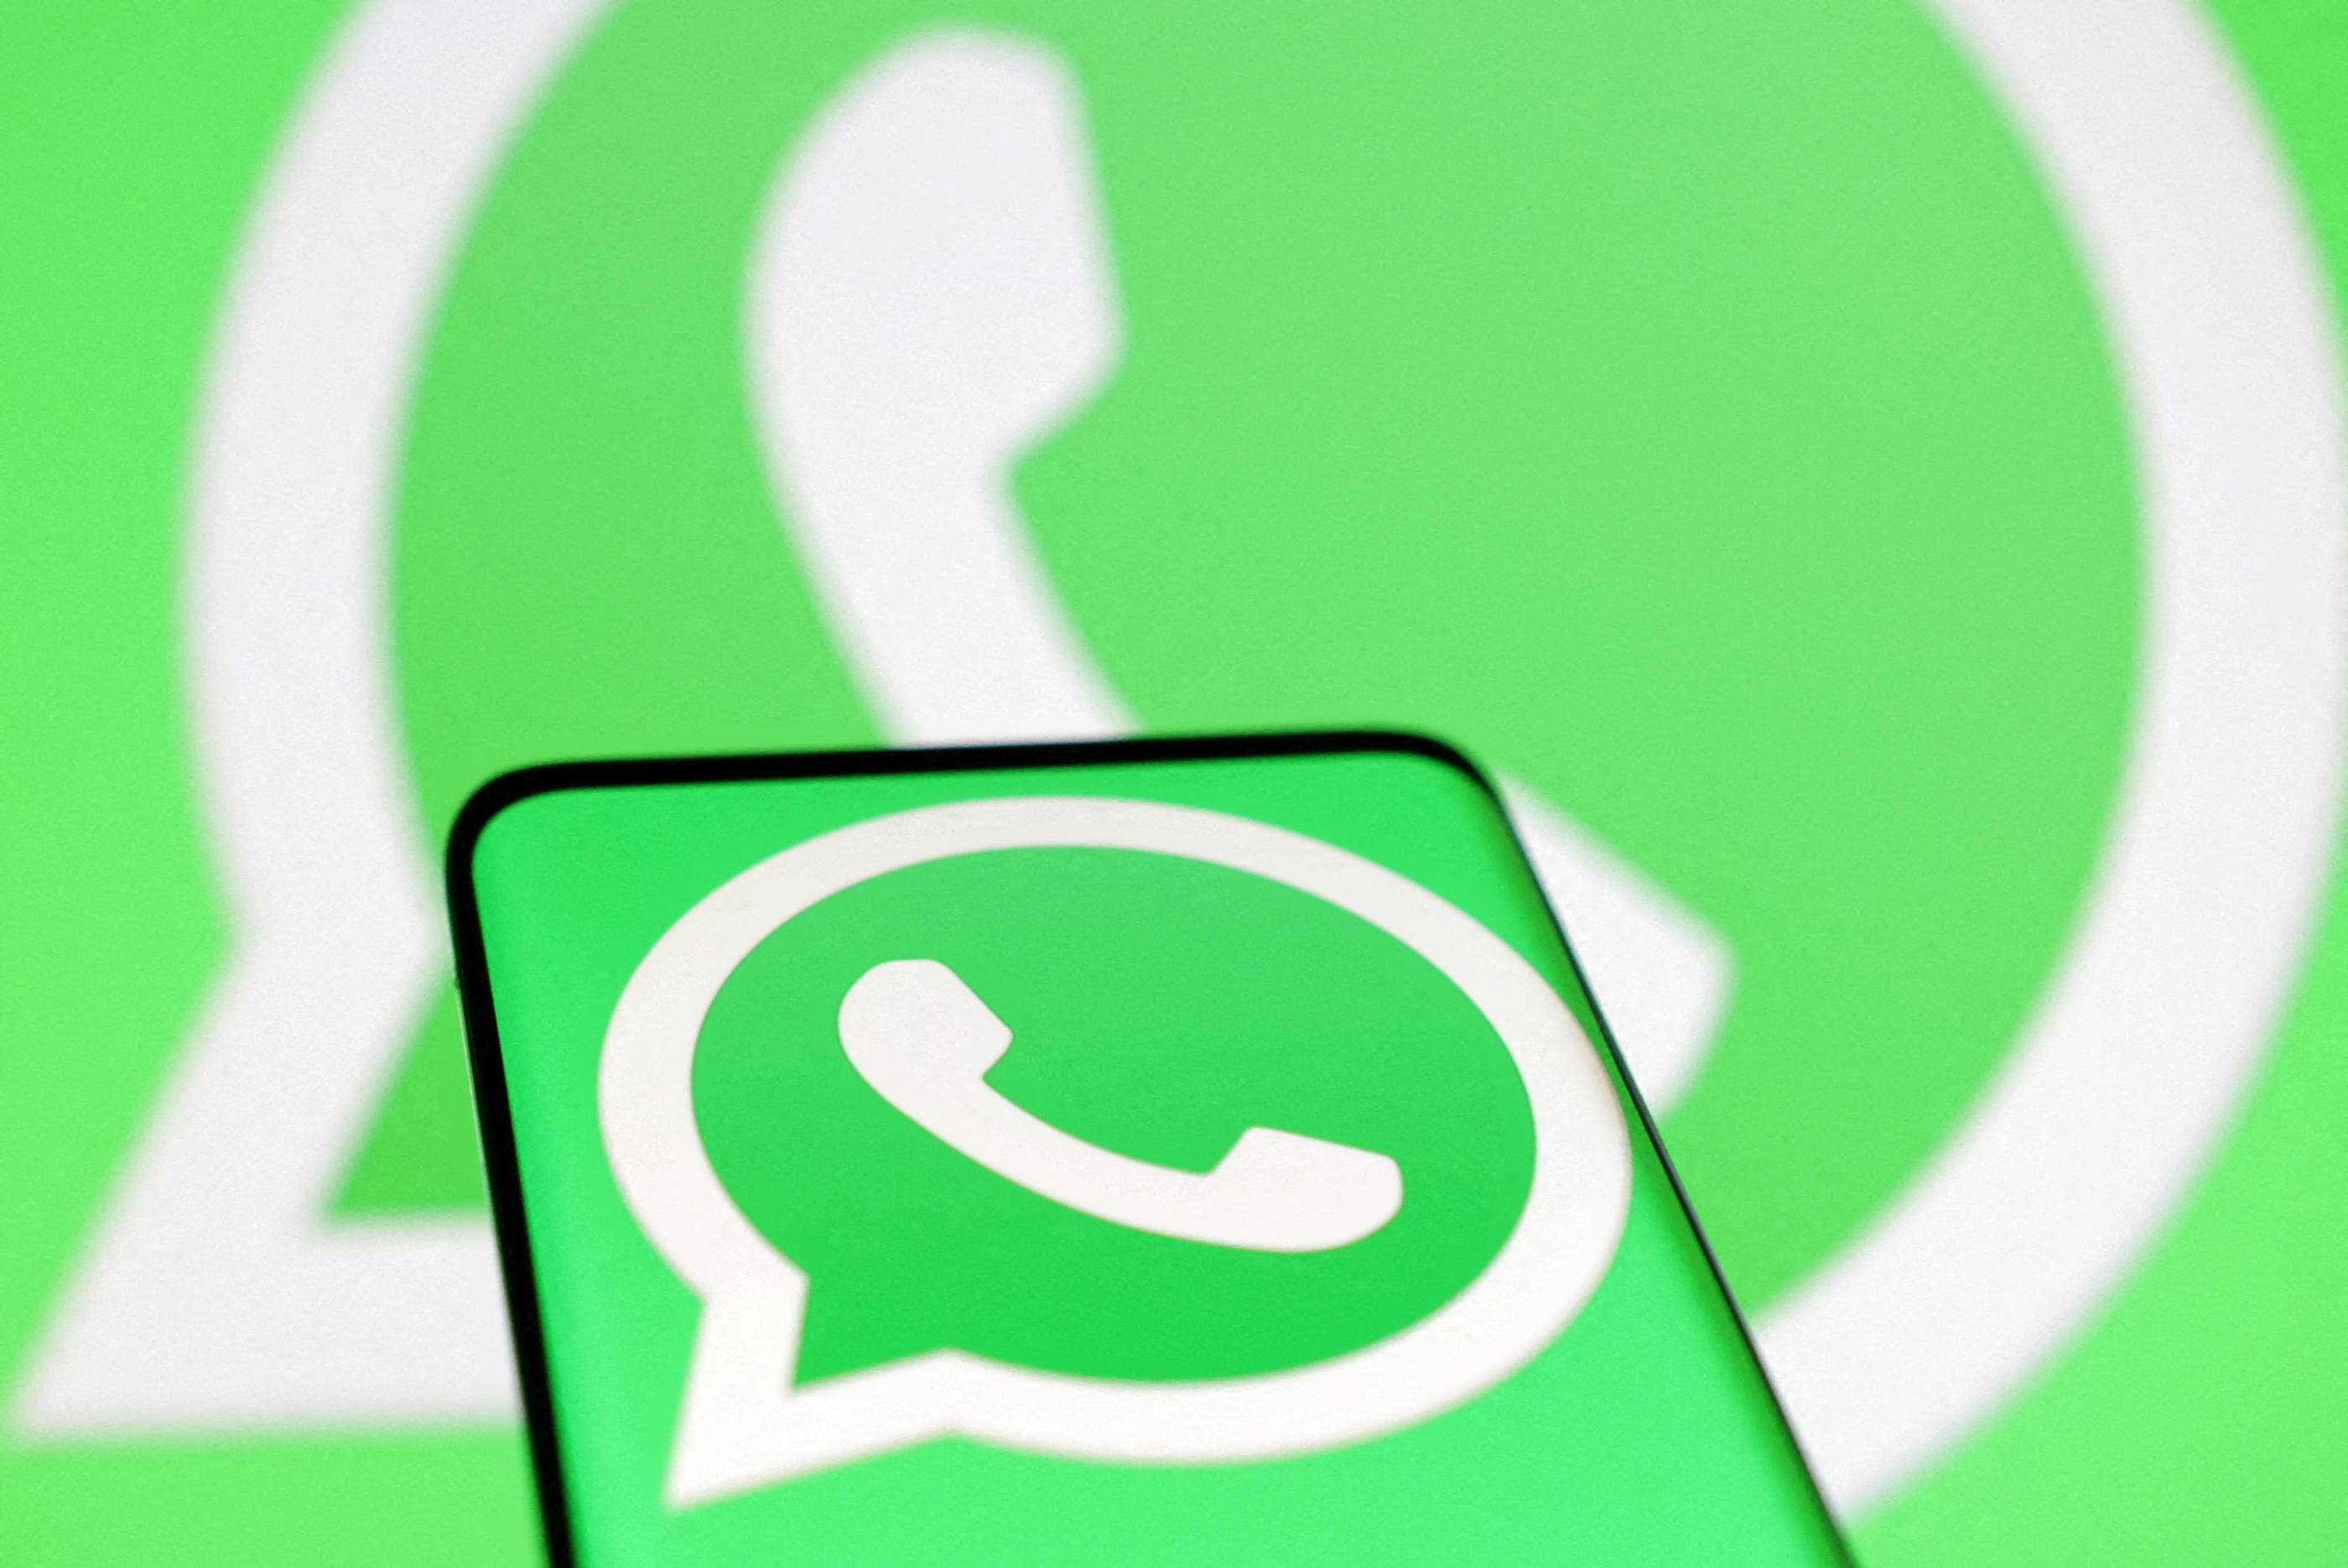 WhatsApp : Masquer les conversations, c’est désormais possible